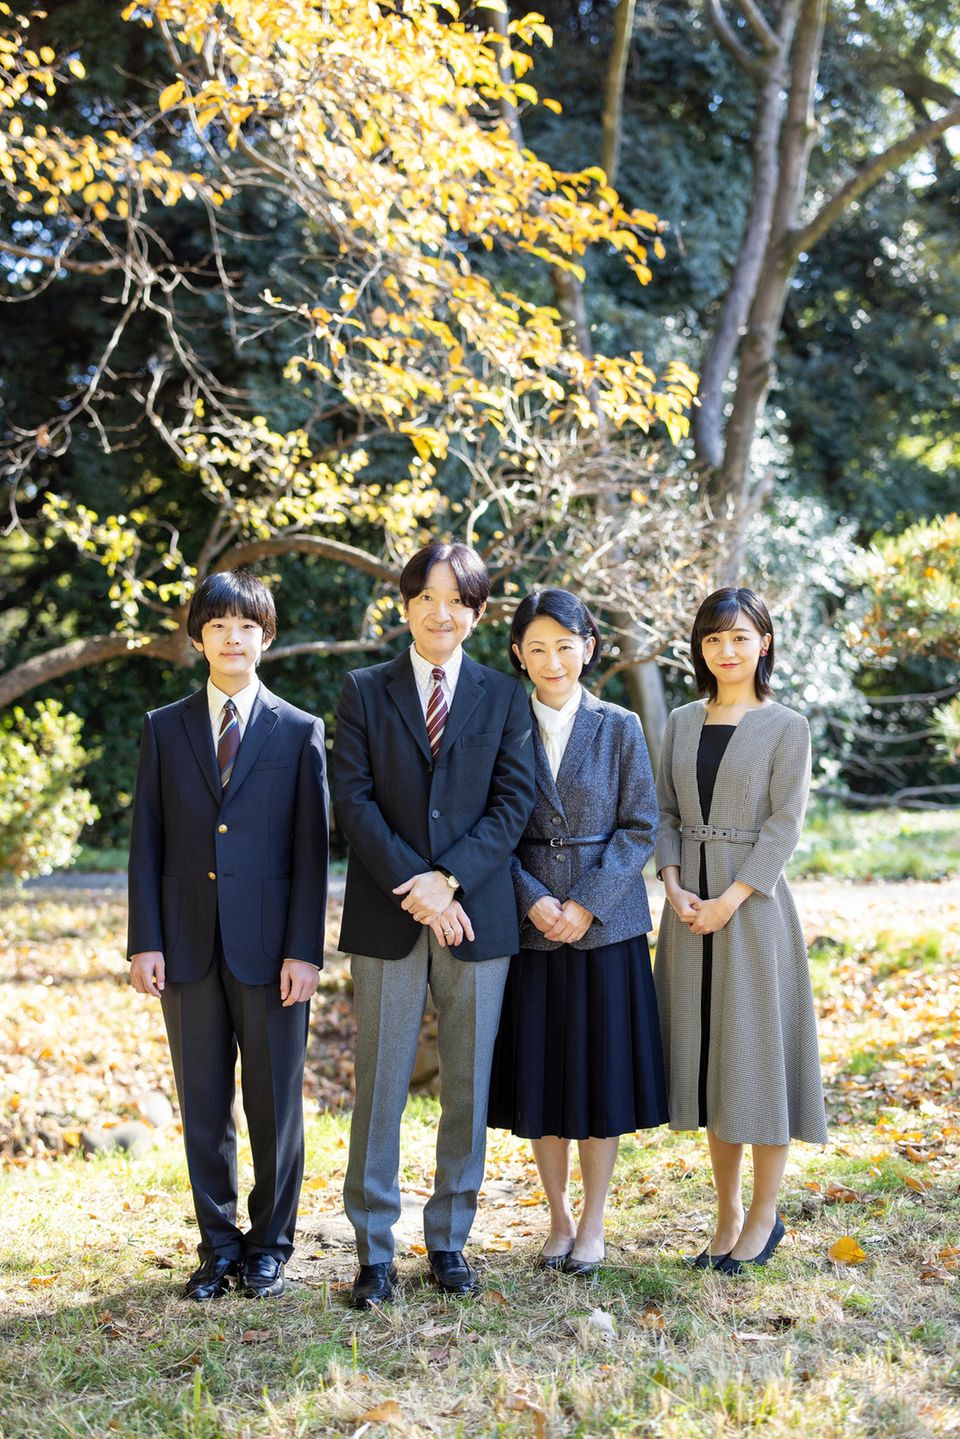 Prinz Hisahito, Kronprinz Akishino, Kronprinzessin Kiko und Prinzessin Kako (v.l.n.r.)